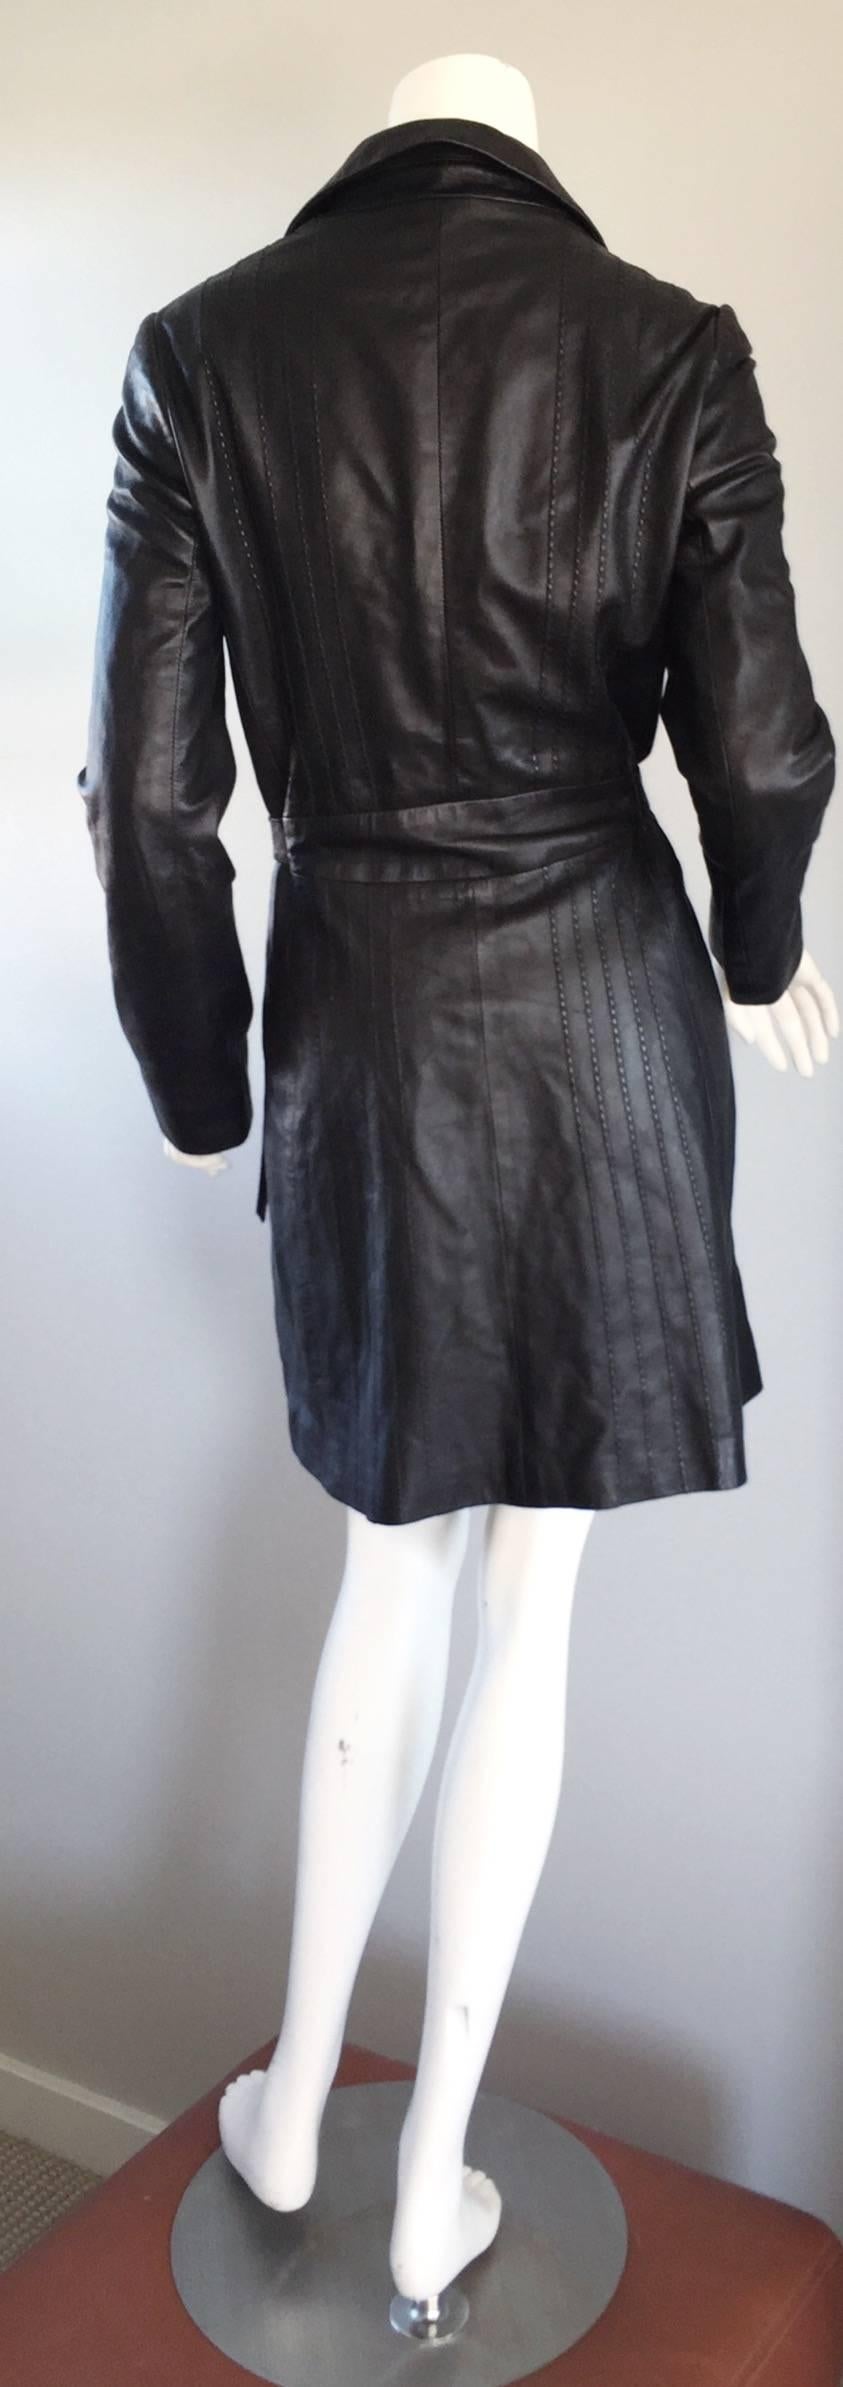 Women's Katayone Adeli Black Leather Belted Spy Trench Jacket / Coat Dress